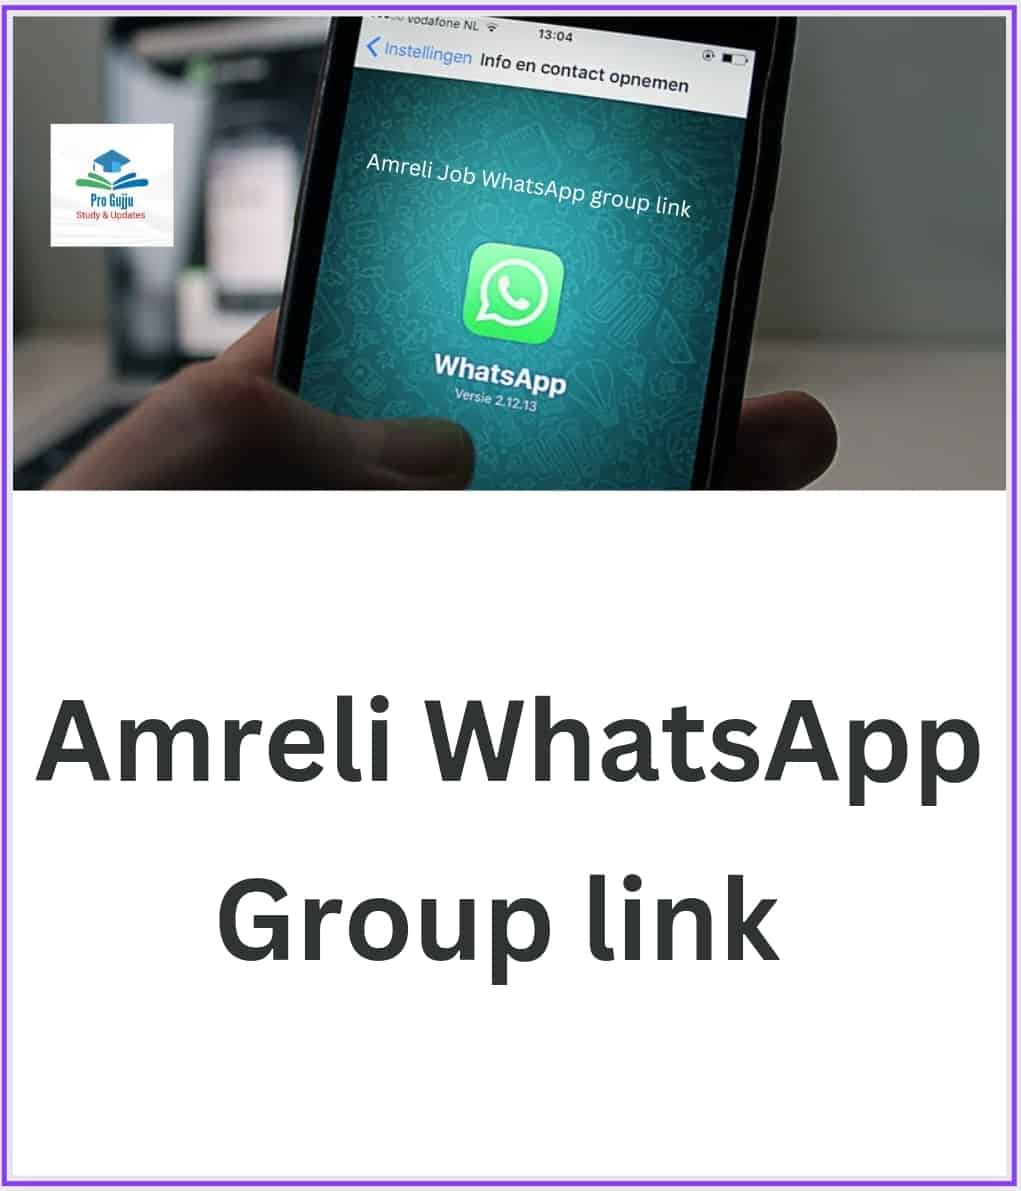 Amreli WhatsApp Group Link